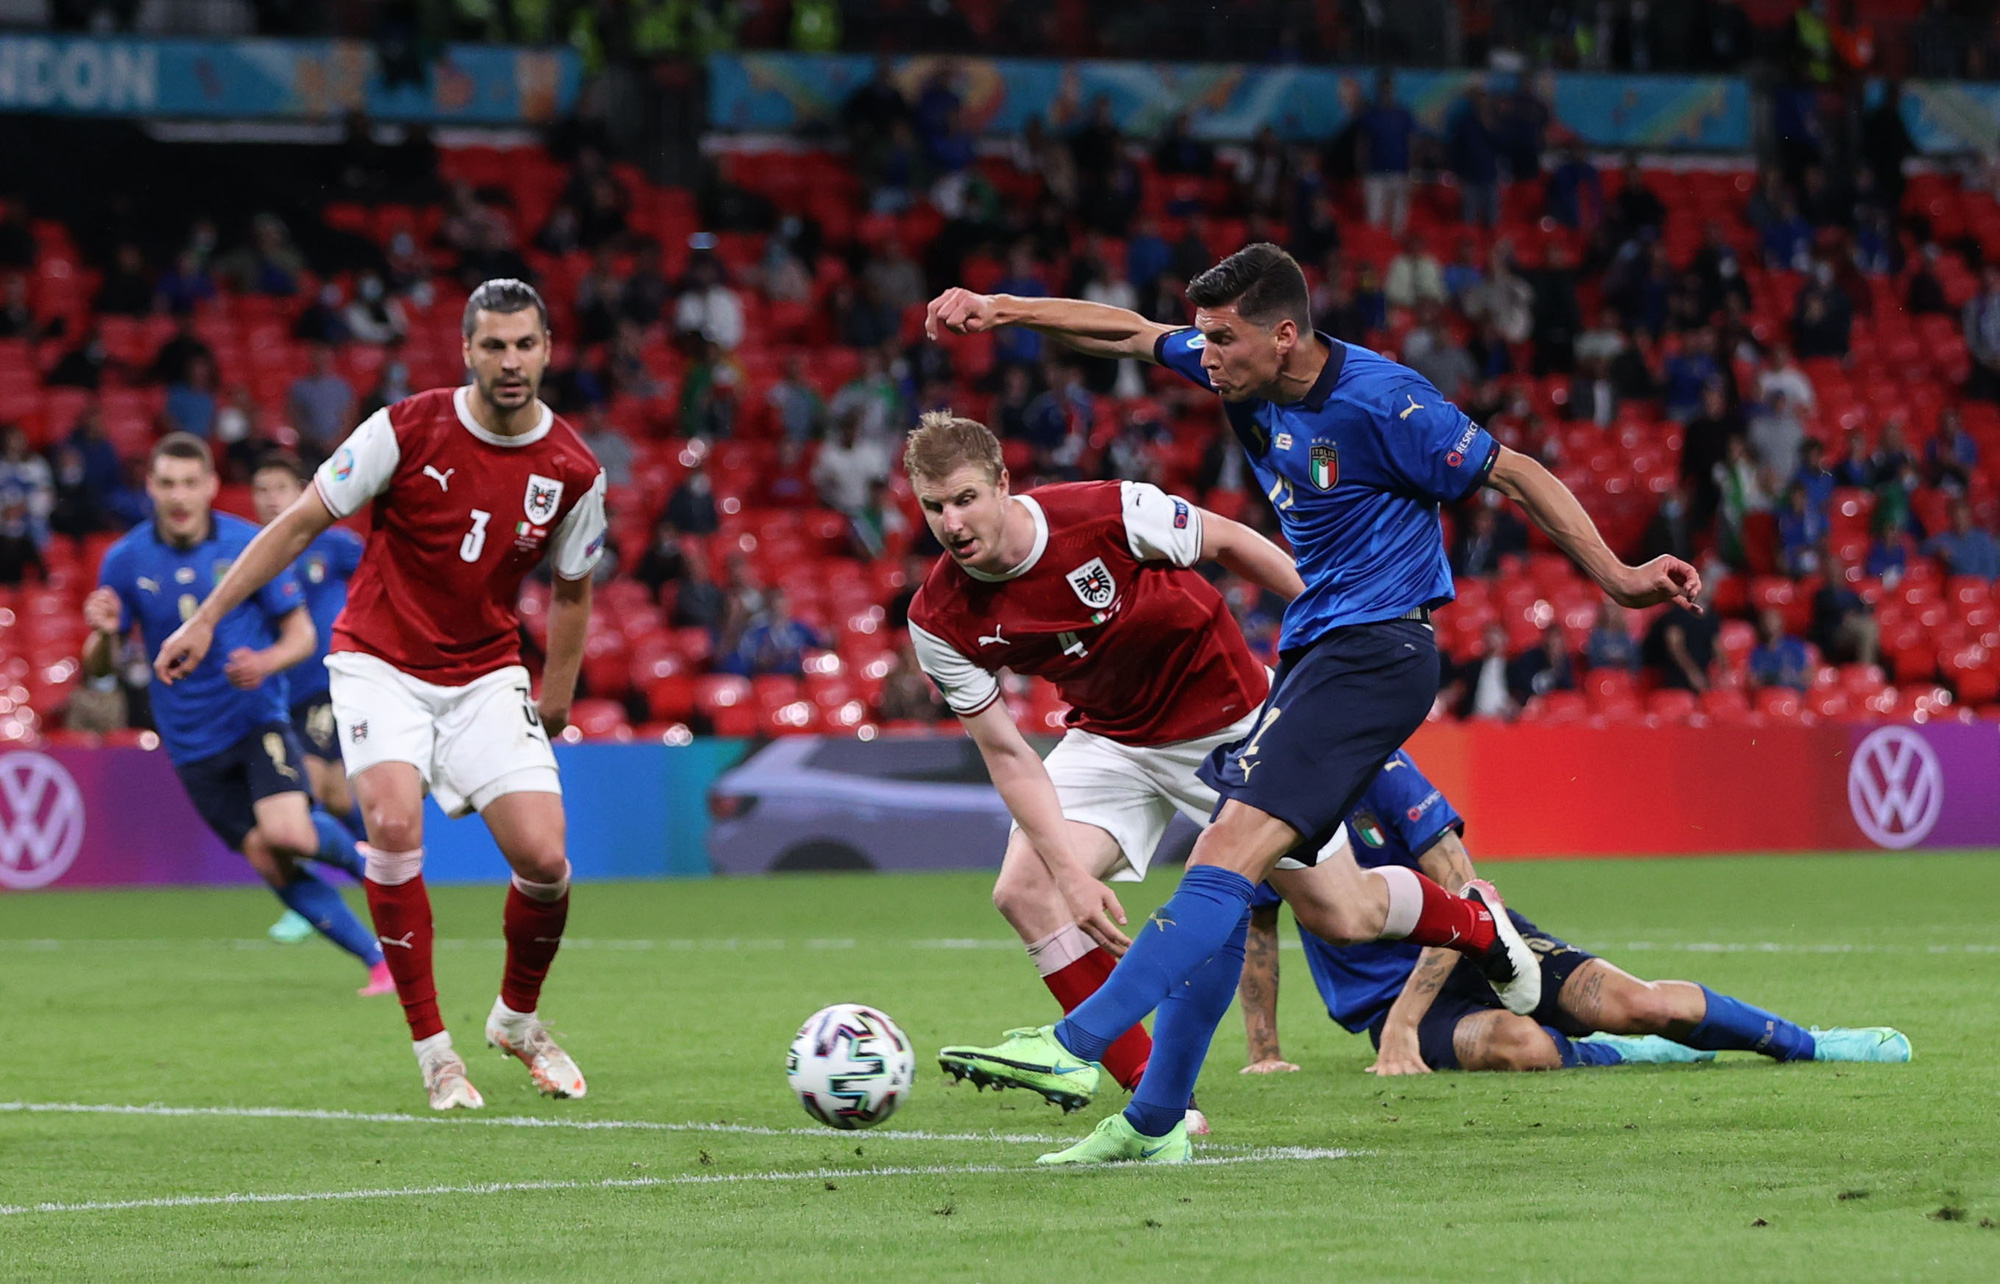 Tuyển Ý vào tứ kết Euro 2020 nhờ hai siêu phẩm bàn thắng - Ảnh 1.